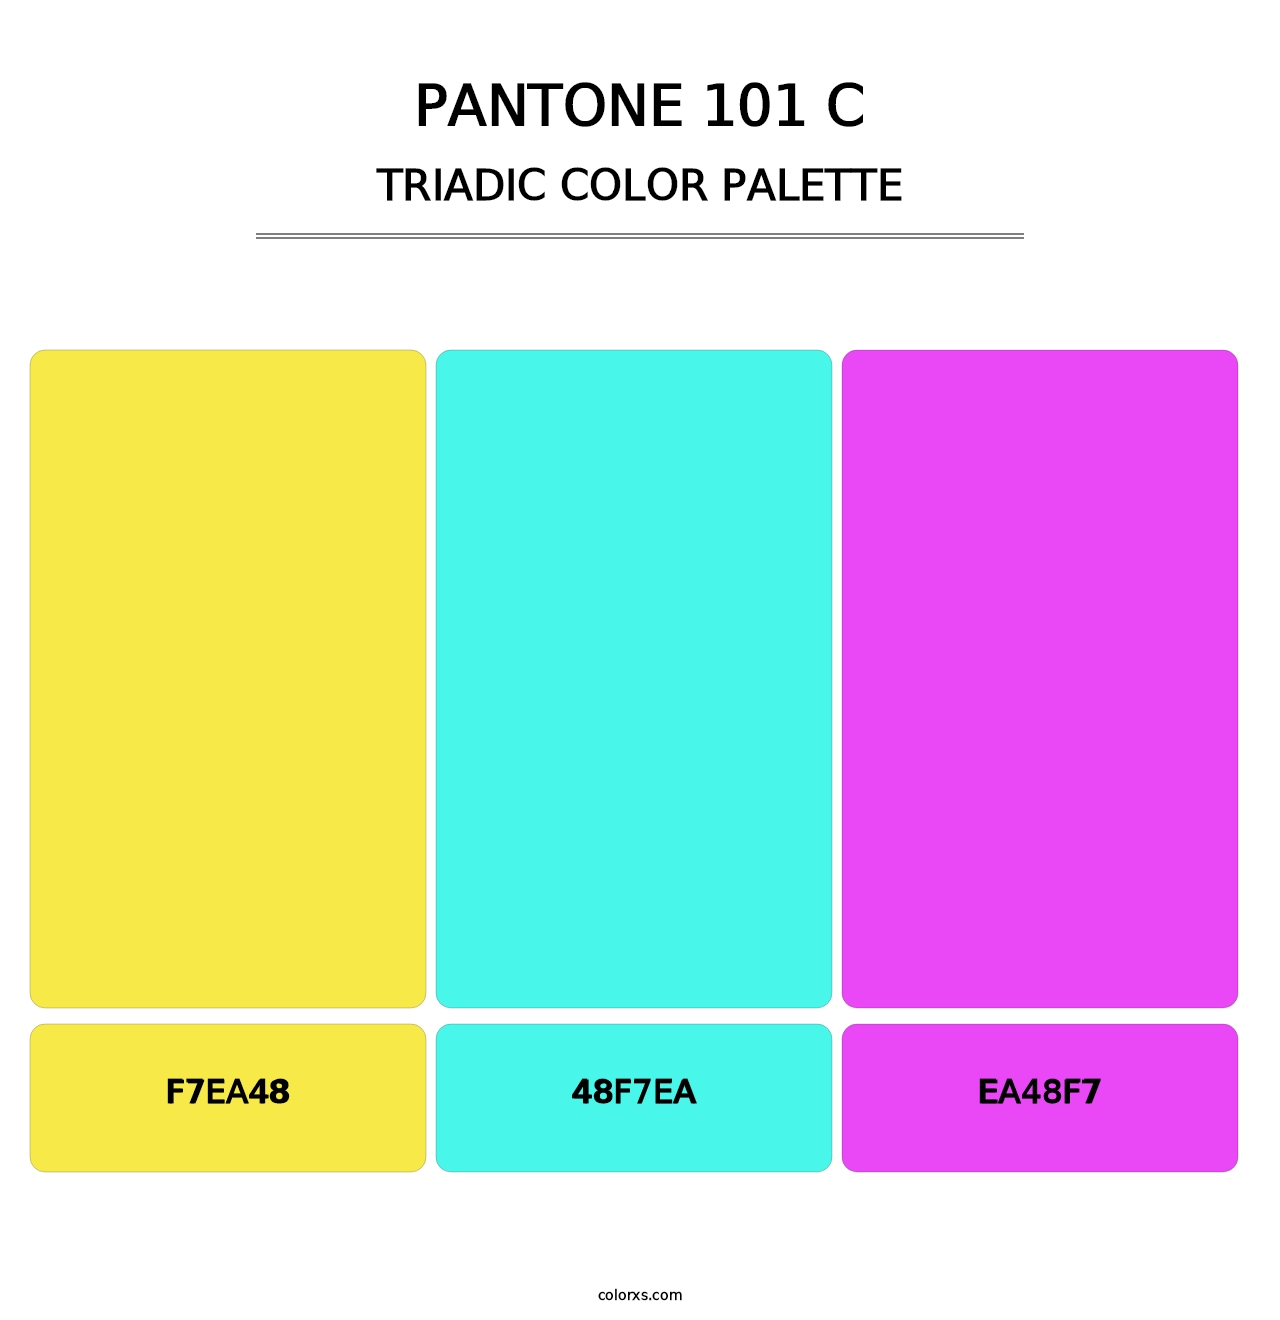 PANTONE 101 C - Triadic Color Palette